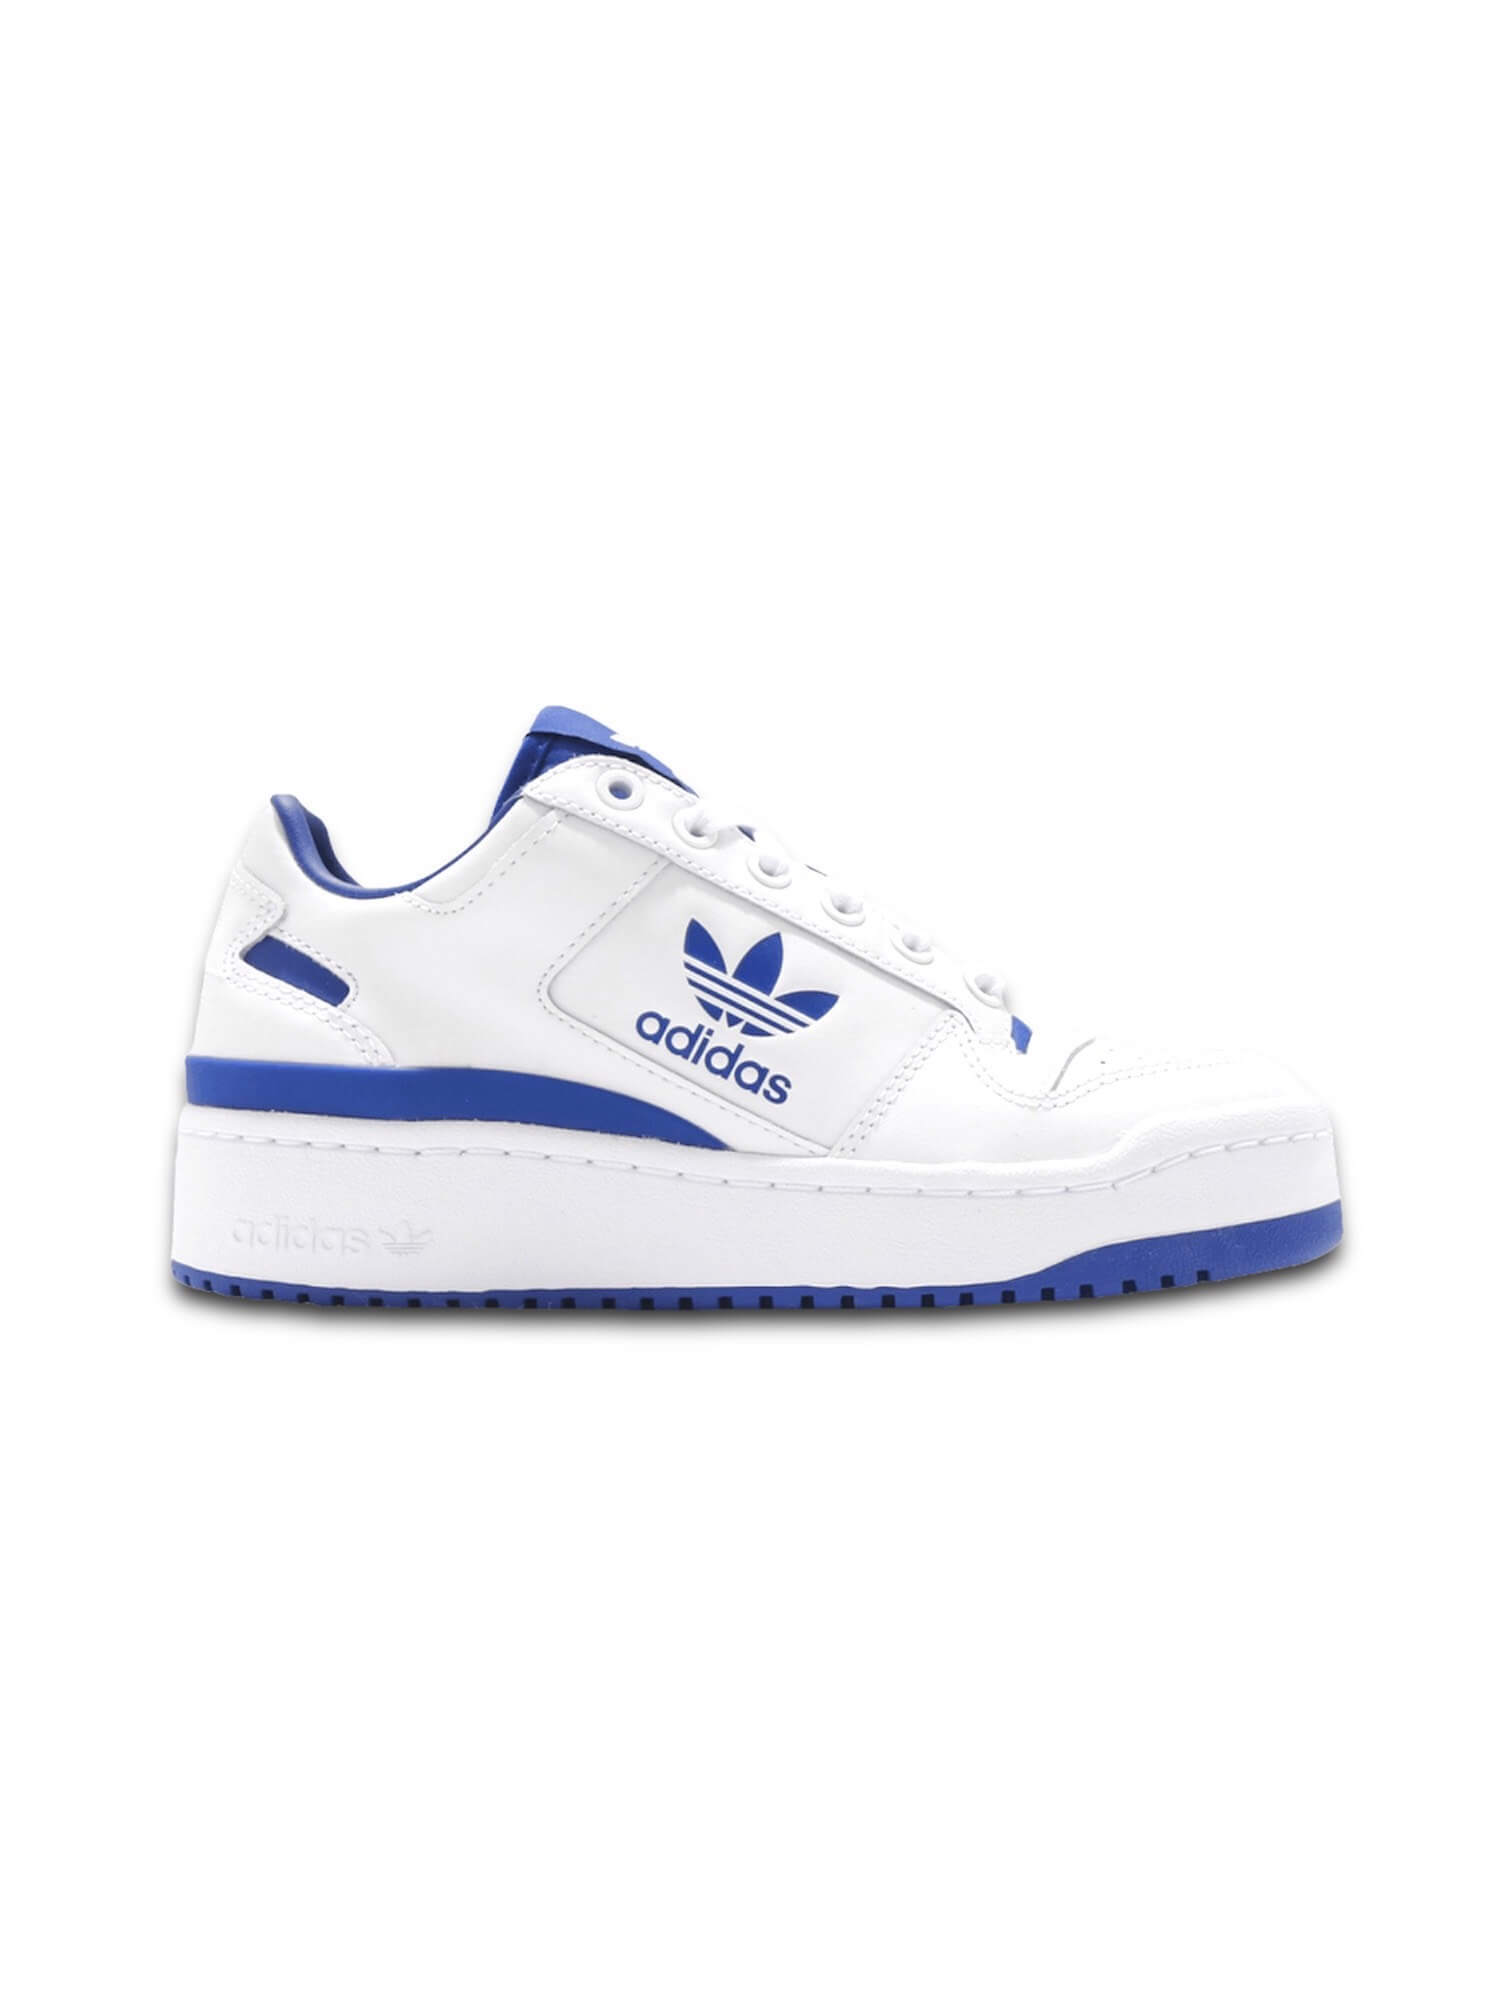 Giày Adidas Forum 84 White Royal Blue